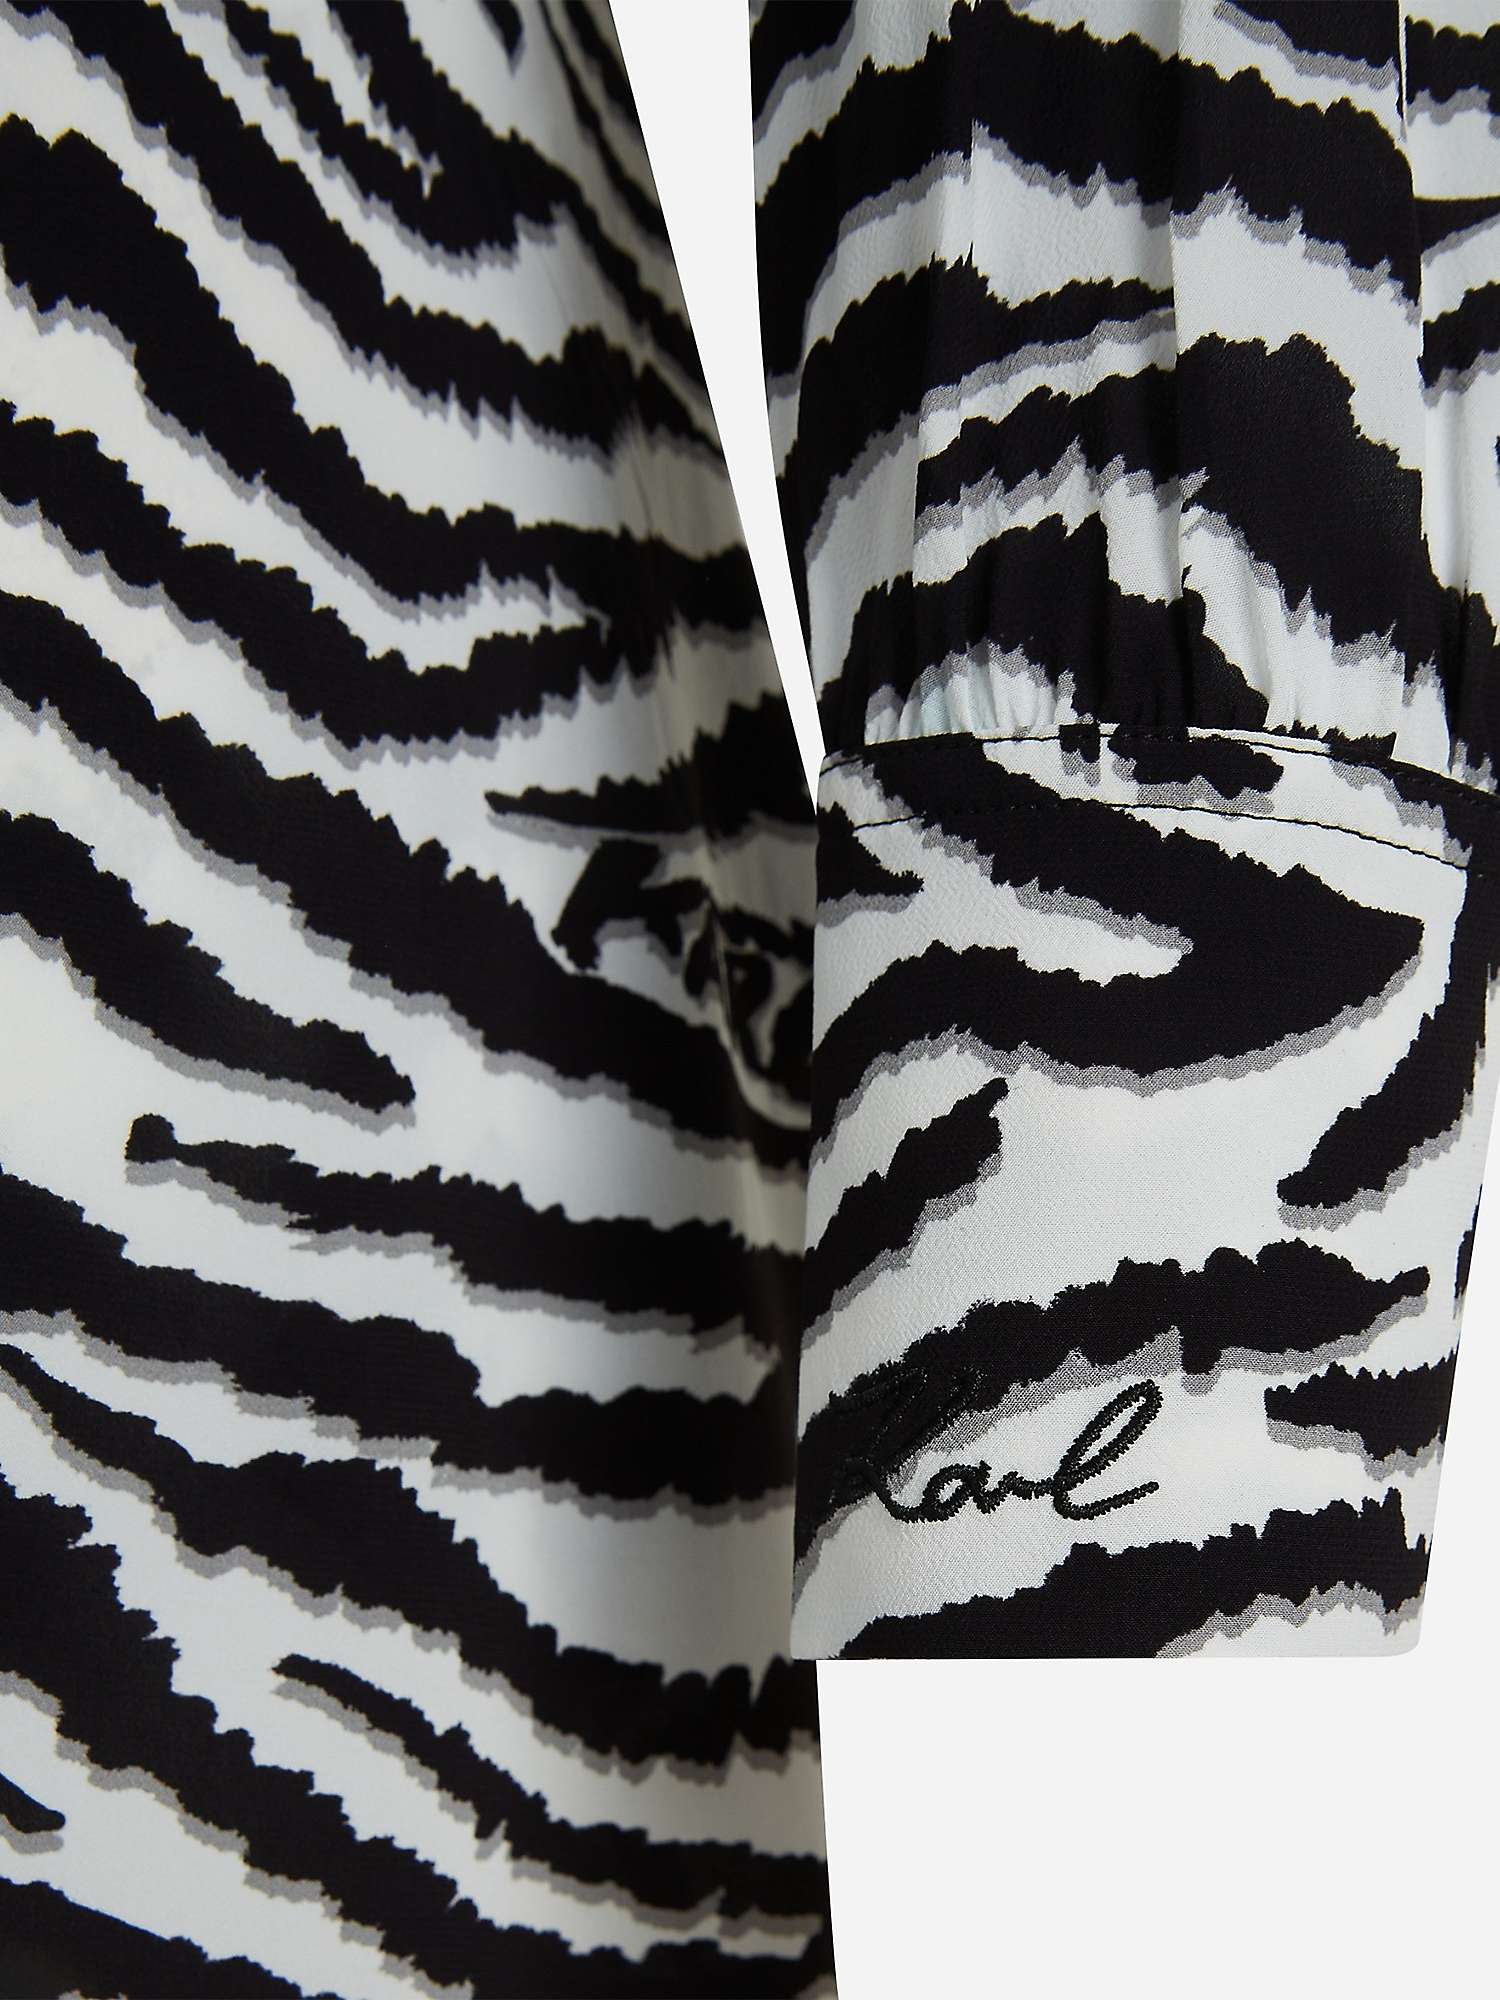 Buy KARL LAGERFELD Animal Print Shirt Dress, R04 Karl Animal Online at johnlewis.com